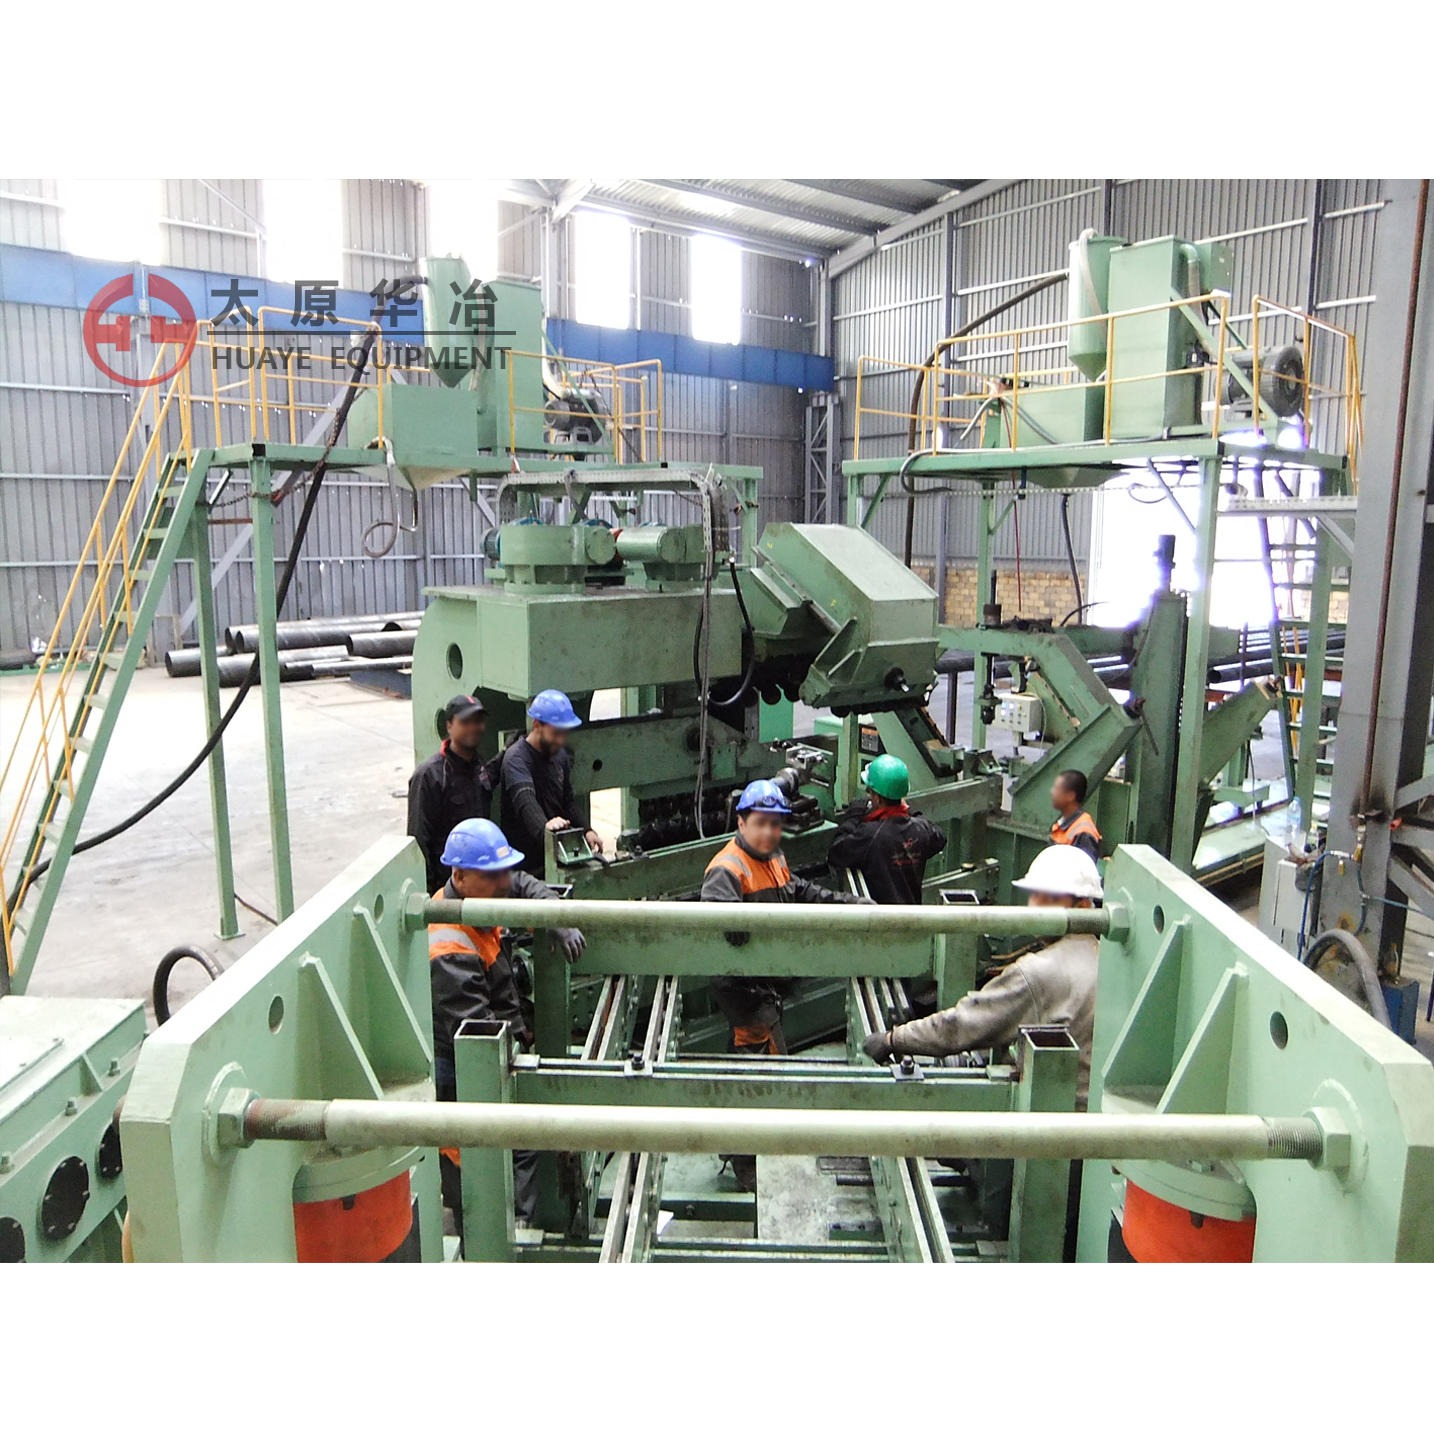 太原华冶 螺旋焊管机组设备 LH1250-820-14 专业生产设计螺旋焊管生产线